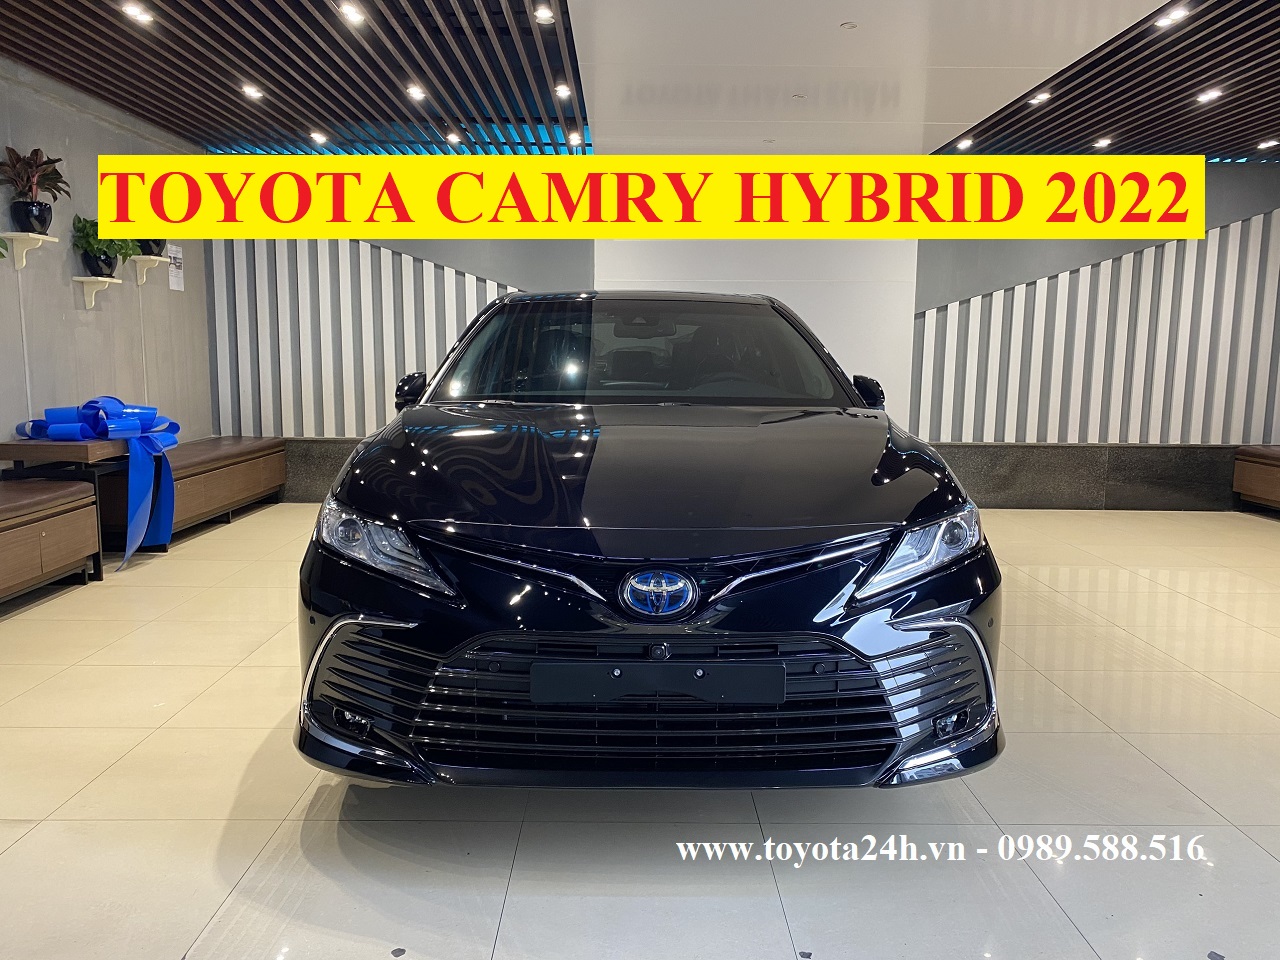 Toyota Camry 2.5 Hybrid 2022 Màu Đen | Bảng Giá Xe | Hình Ảnh | Lăn Bánh Mới Nhất